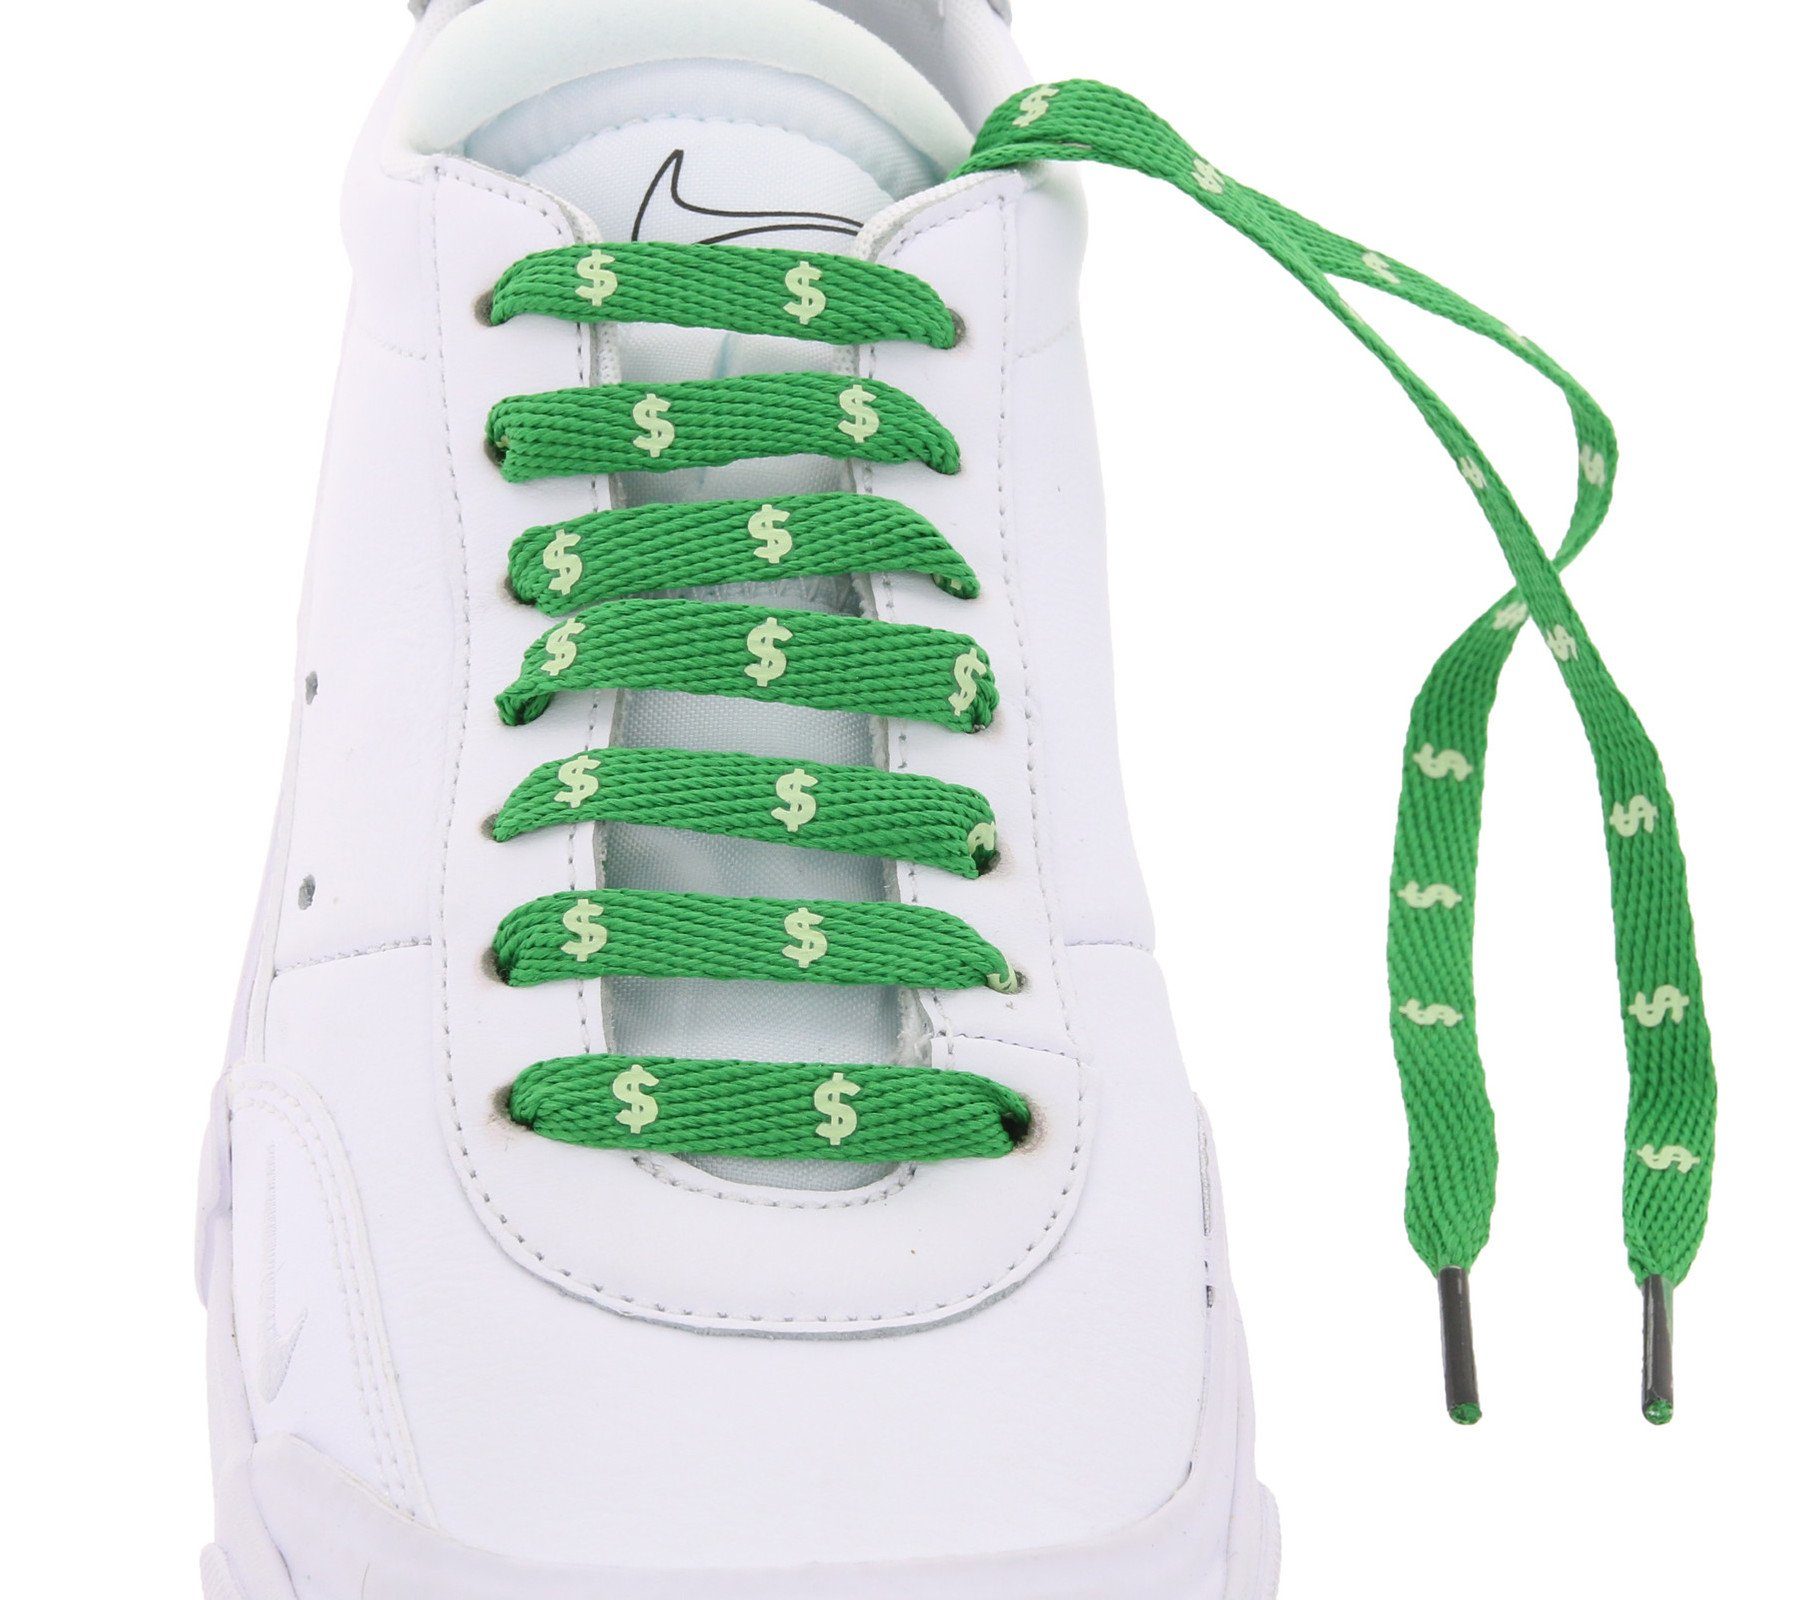 Tubelaces Schnürsenkel TubeLaces Schuhe Dollars angesagte Grün/Weiß Schuhbänder Schnürsenkel top Schnürbänder